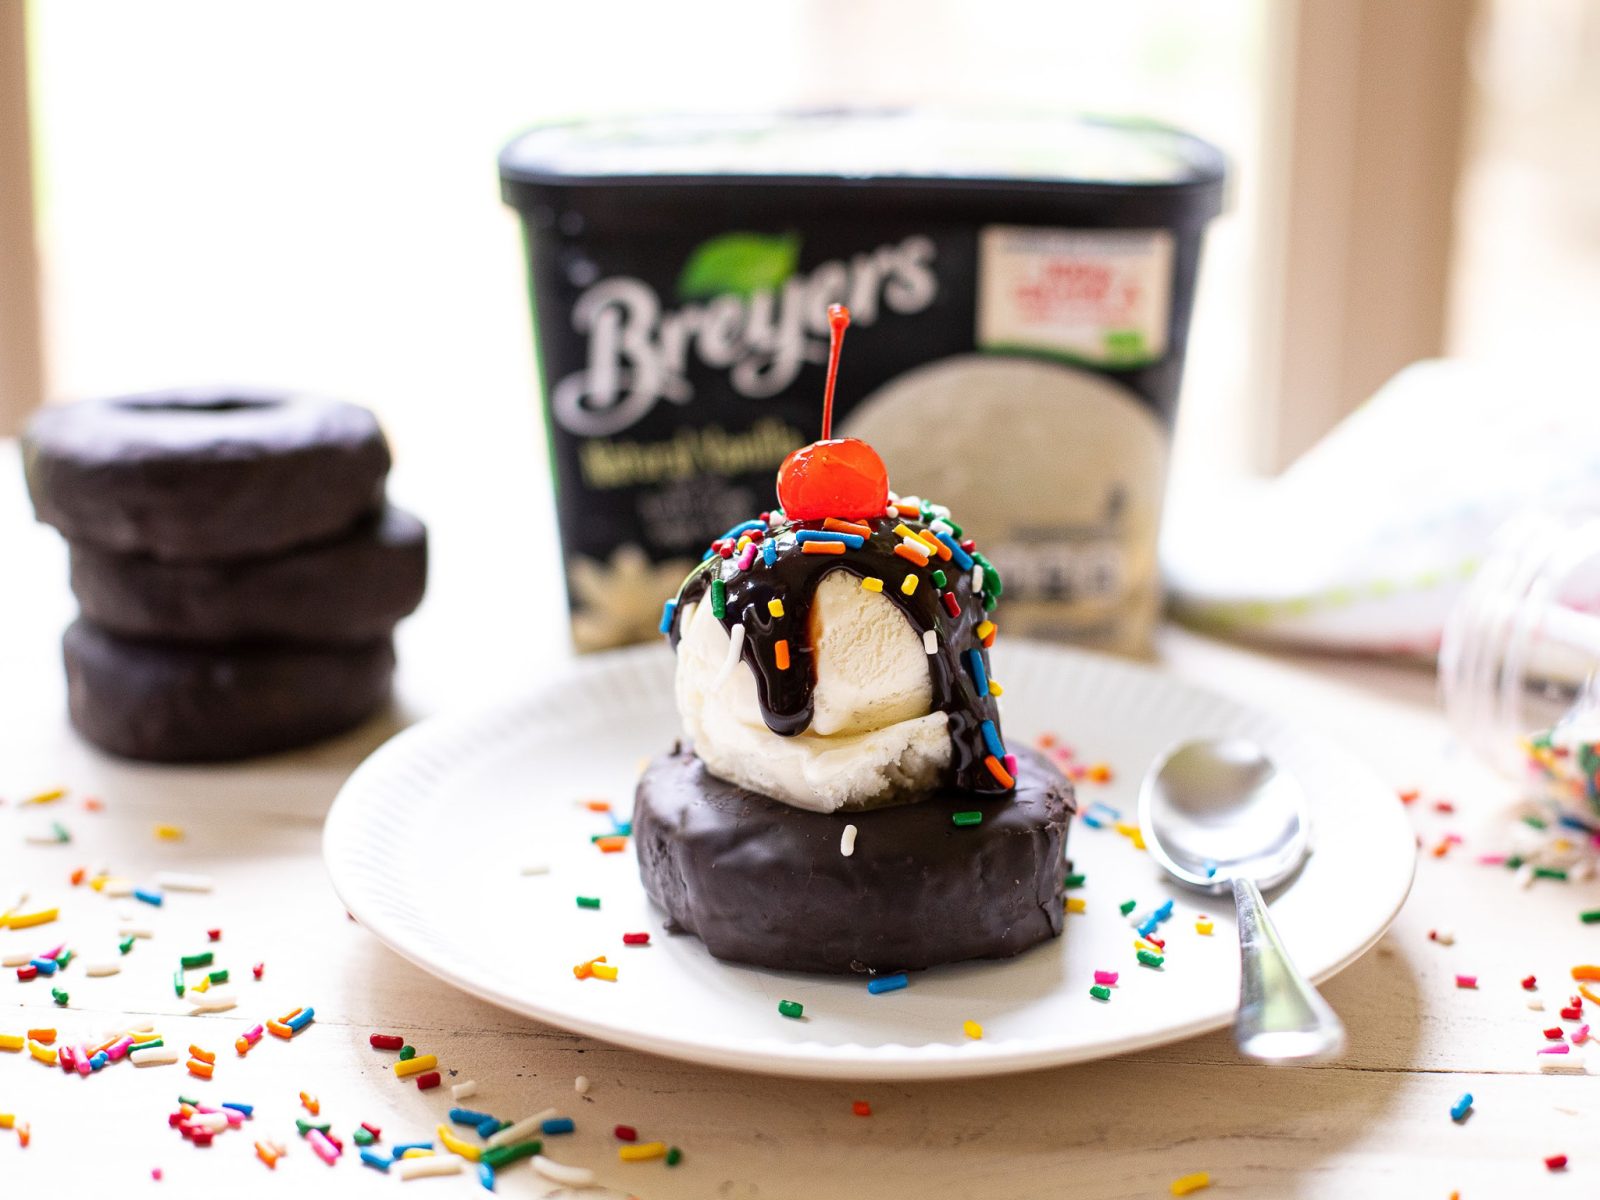 Enjoy A Breyers Donut Sundae And Earn A Gift Card… Dessert And A Perk!